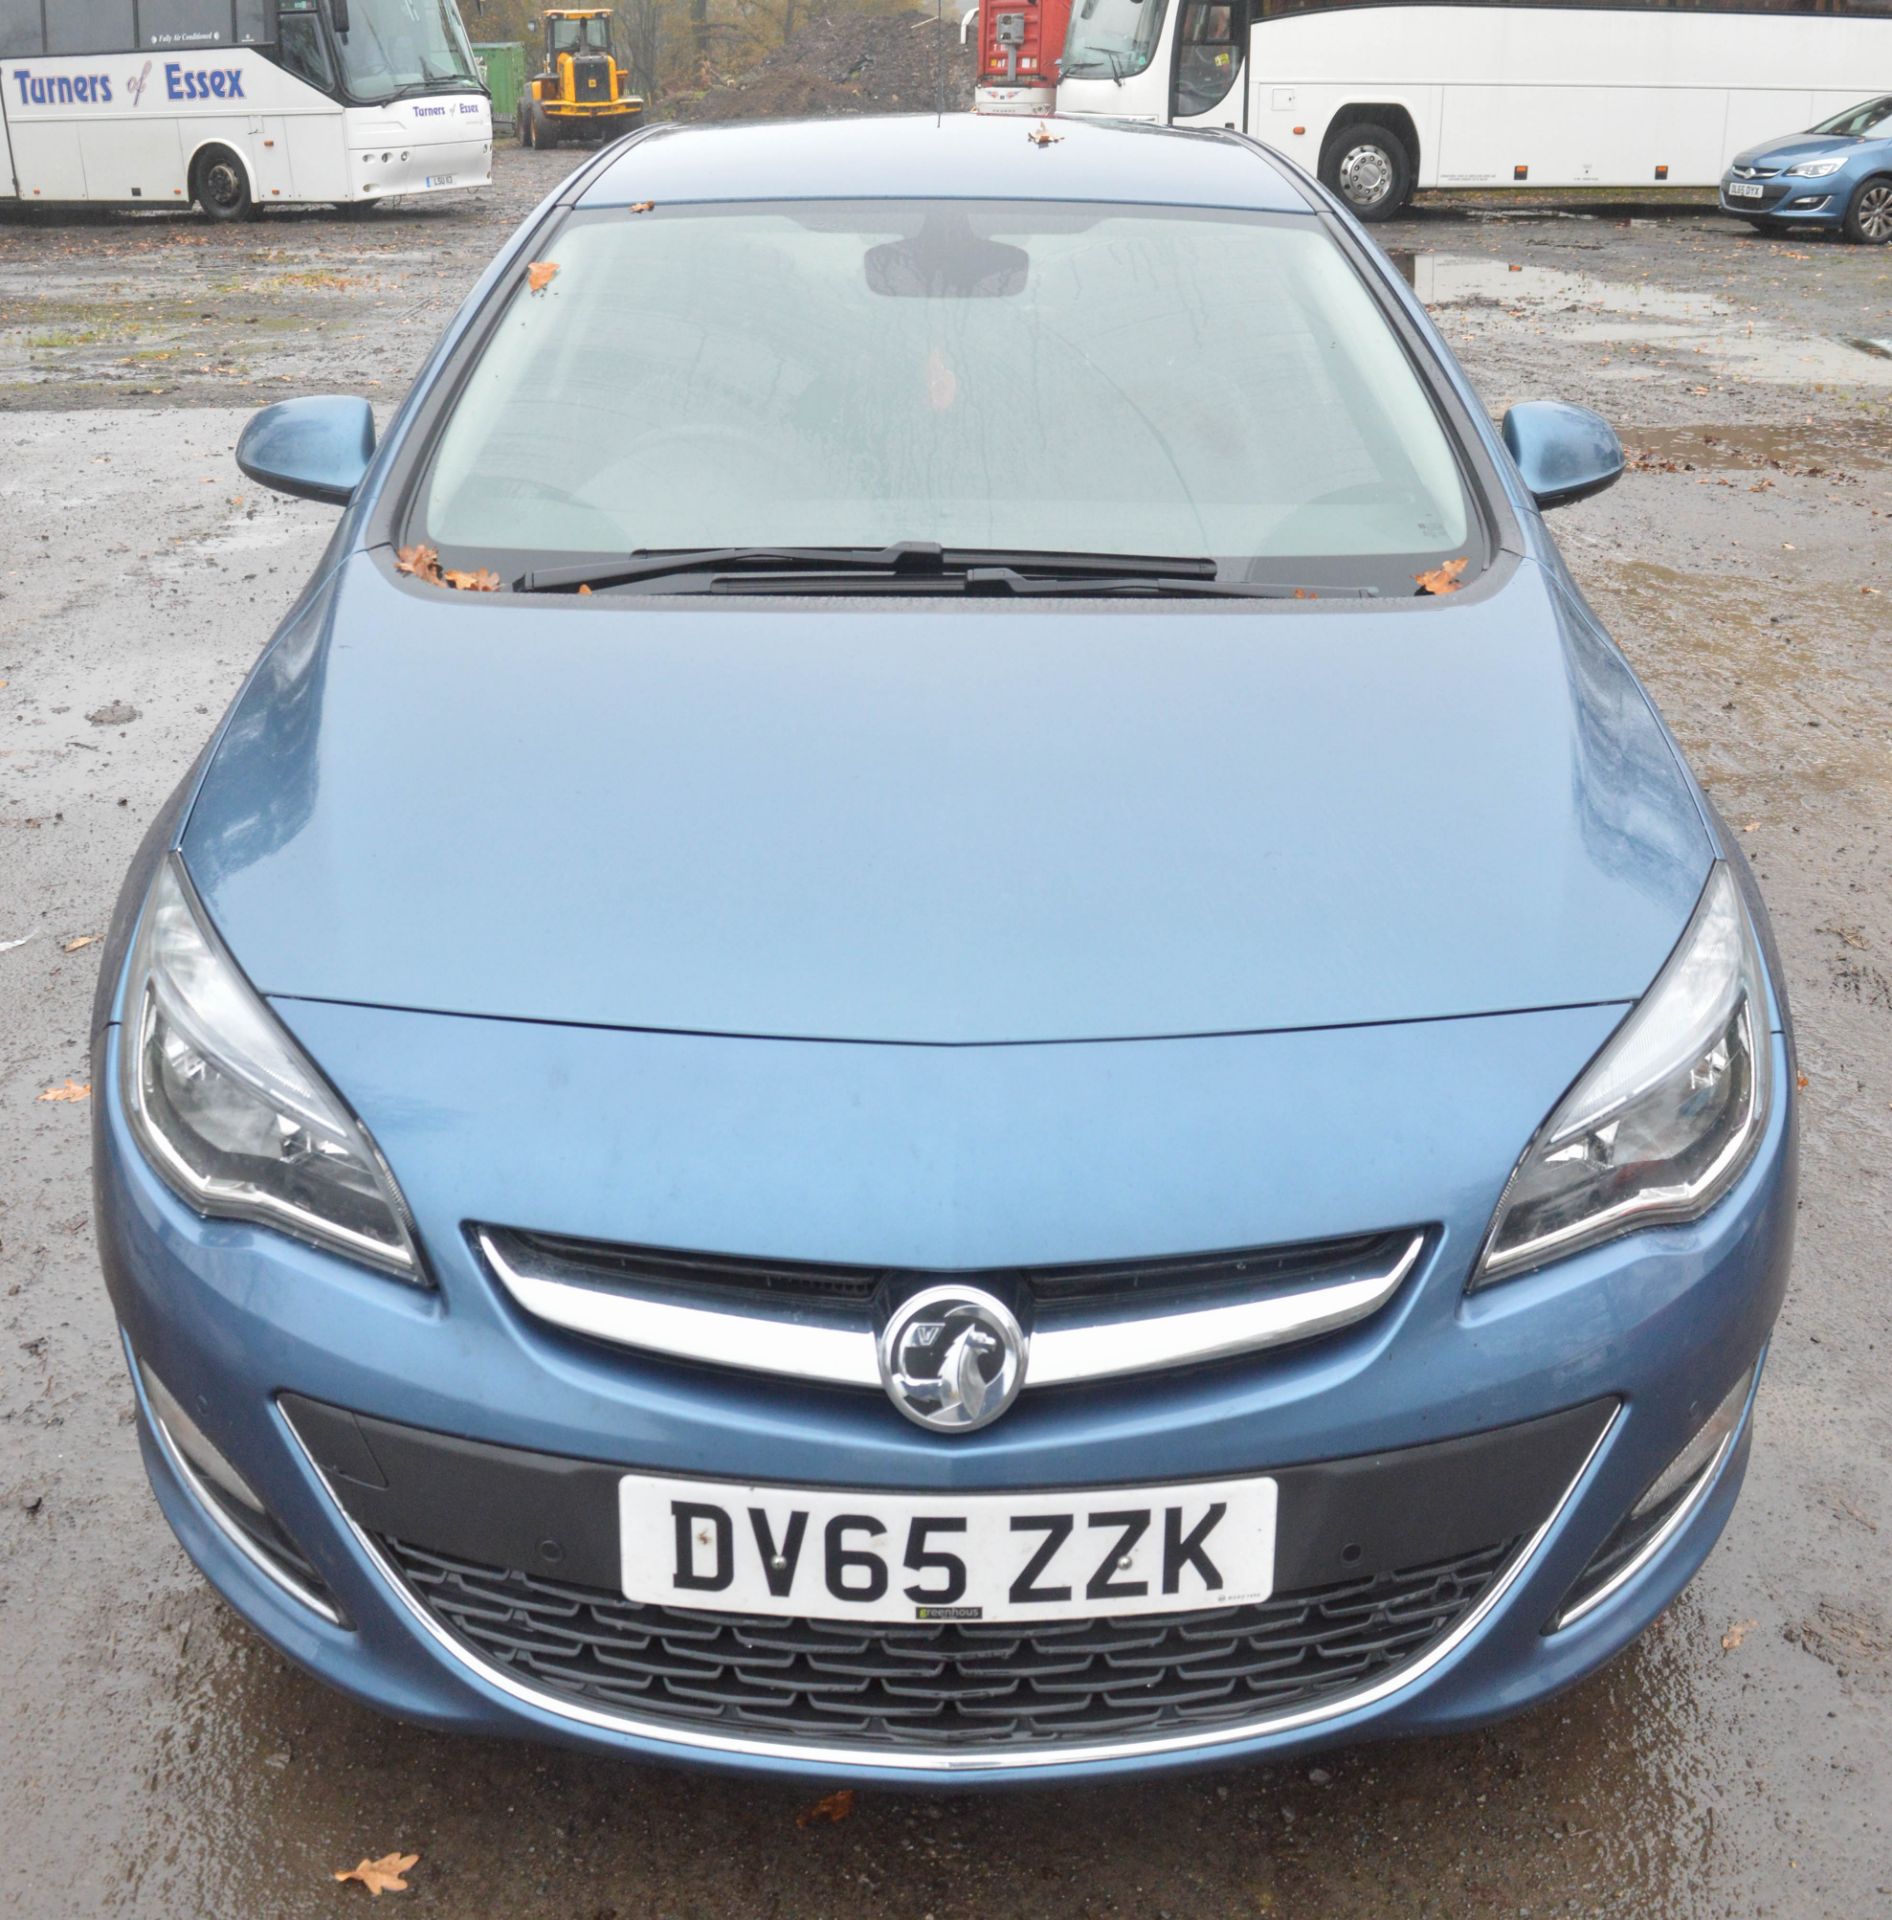 Vauxhall Astra 1.6 i VVT 16v Elite 5dr Hatchback Registration number: DV65 ZZK Date of registration: - Image 5 of 8